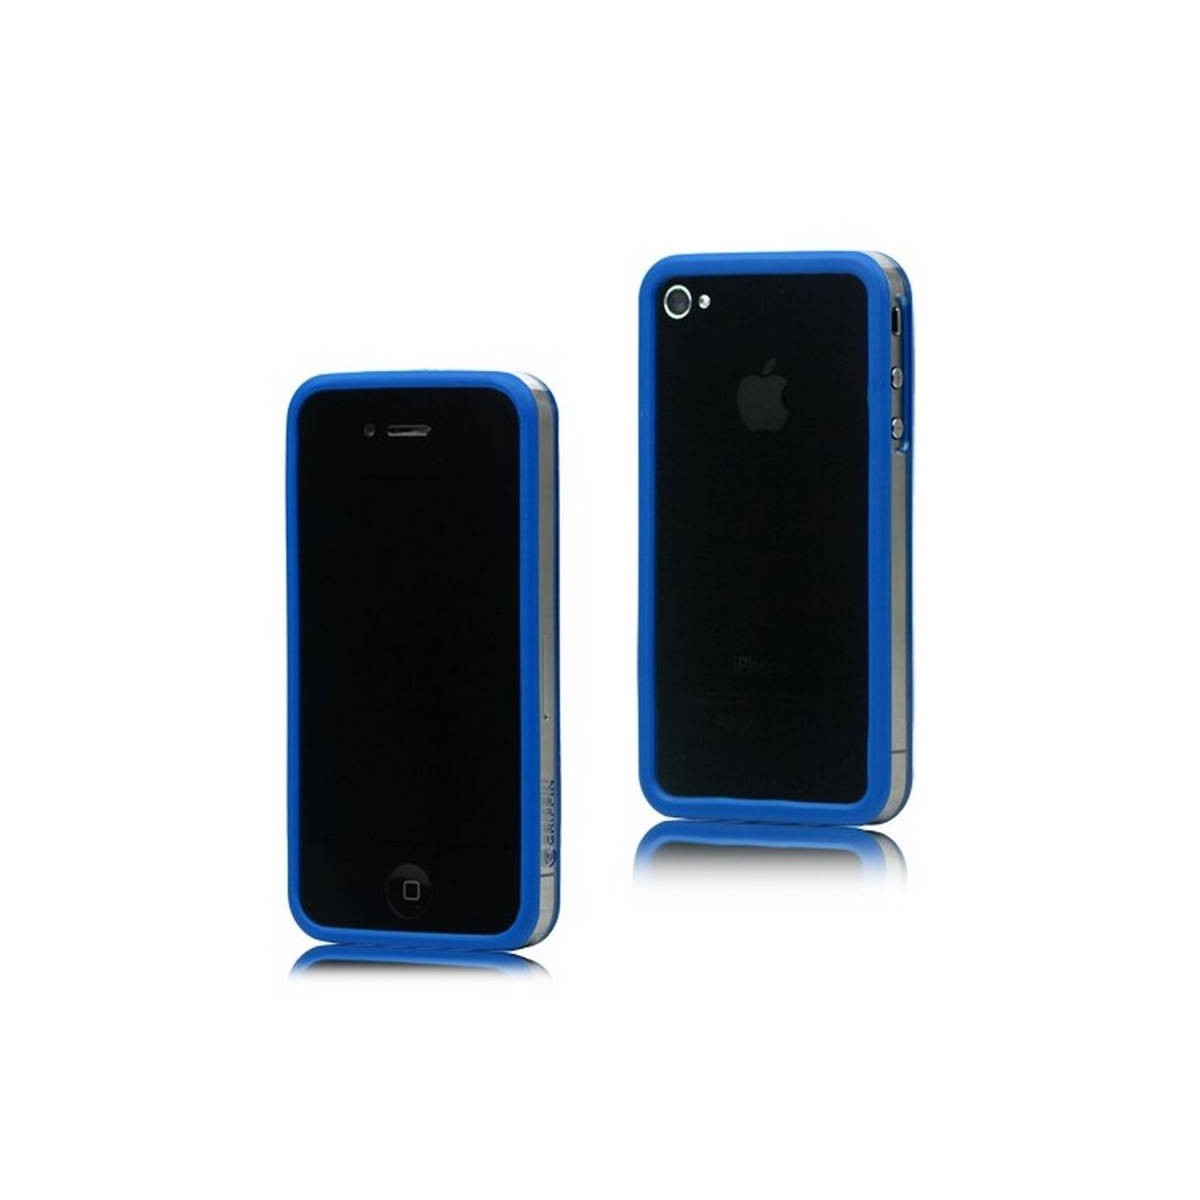 Bumper iphone 4/S azul com transparente